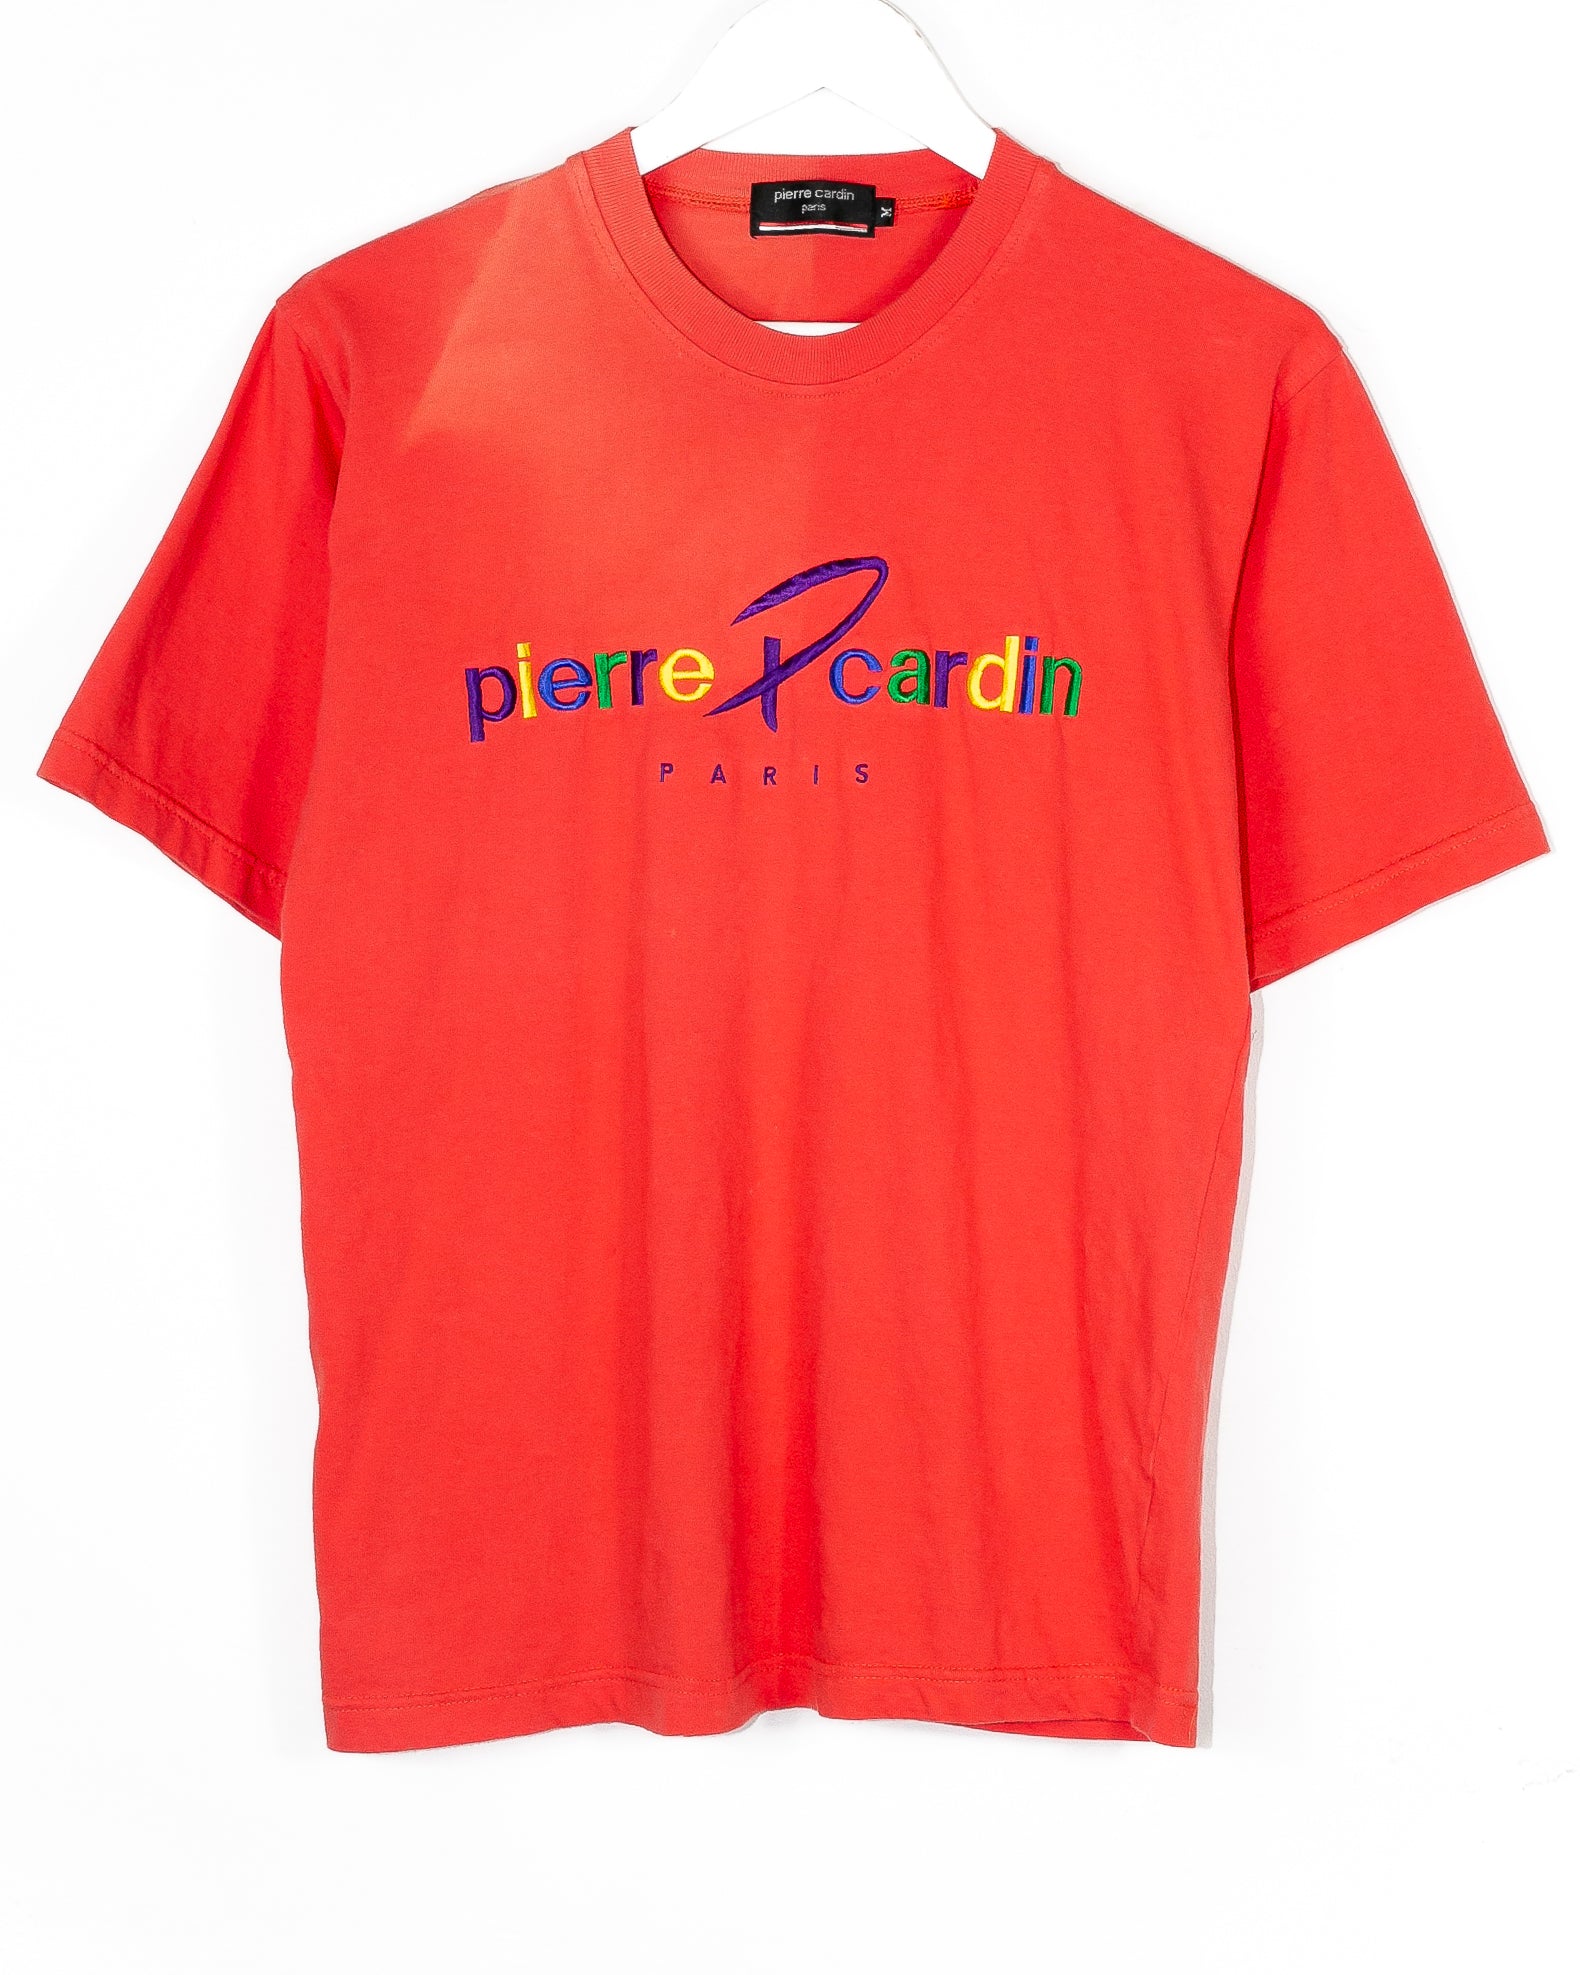 Vintage Pierre Cardin T-shirt (M)